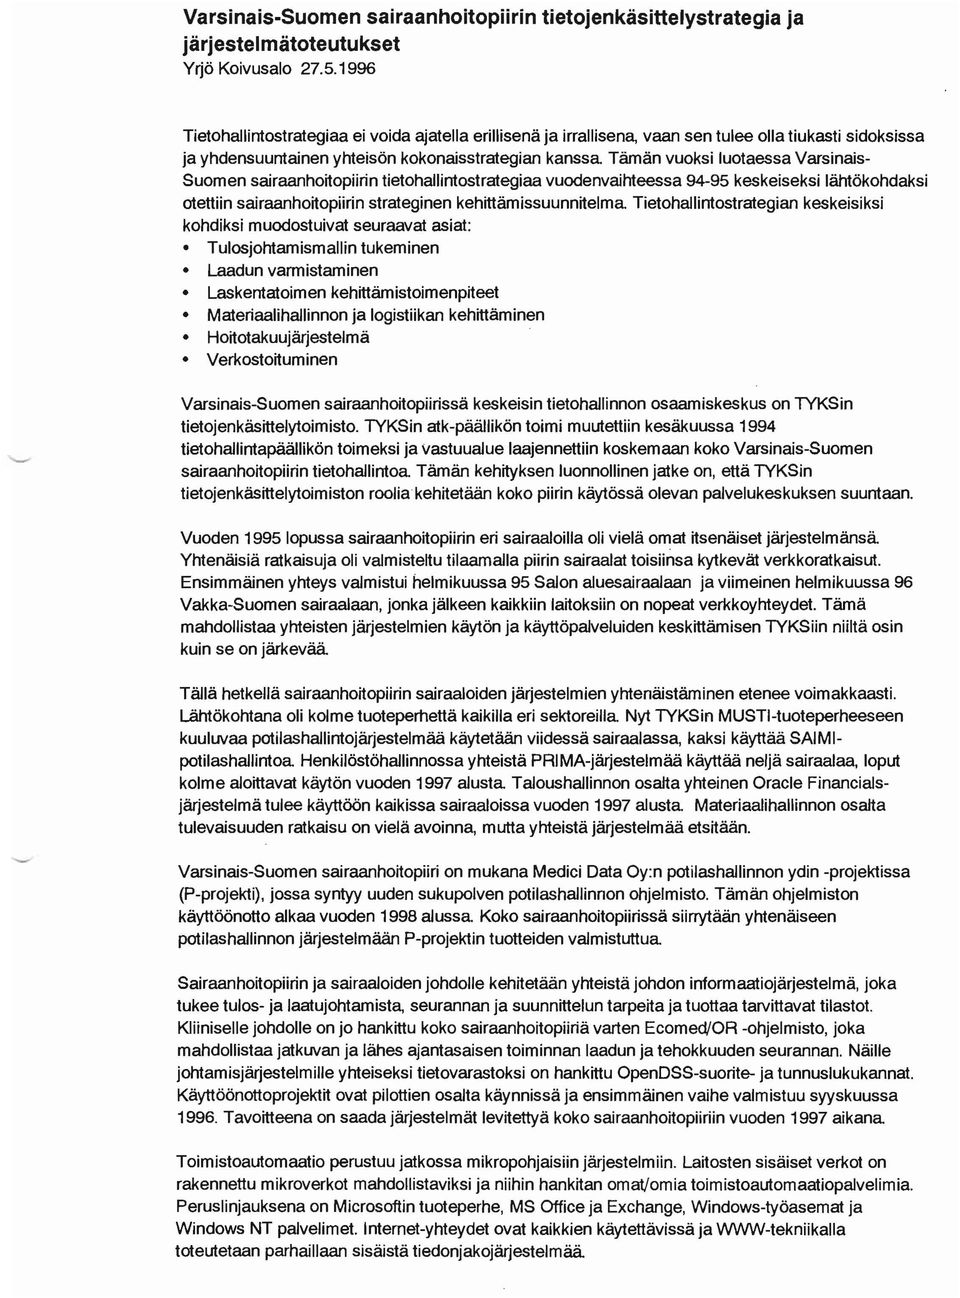 Varsinais Suomen sairaanhoitopiirin tietohallintostrategiaa vuodenvaihteessa 94-95 keskeiseksi lähtökohdaksi otettiin sairaanhoitopiirin strateginen kehittämissuunnitelma Tietohallintostrategian